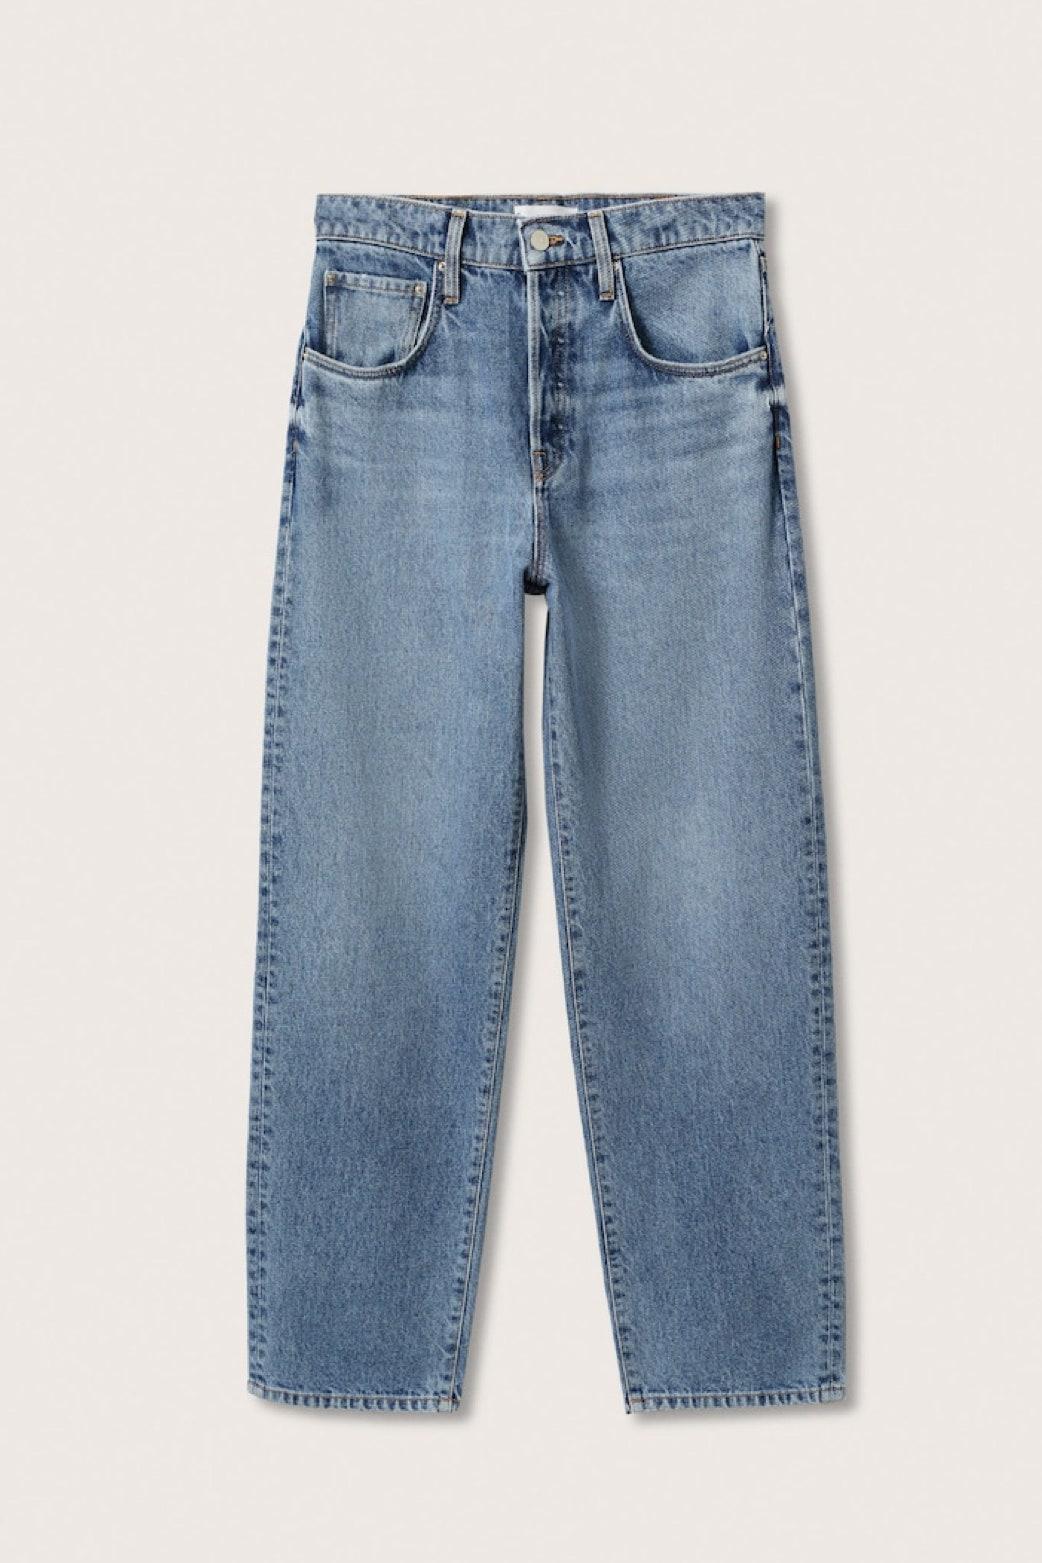 Vergesst Skinny Jeans! Diese neue Zara-Hose aus Denim erobert gerade die Herzen aller Modefans im Sturm